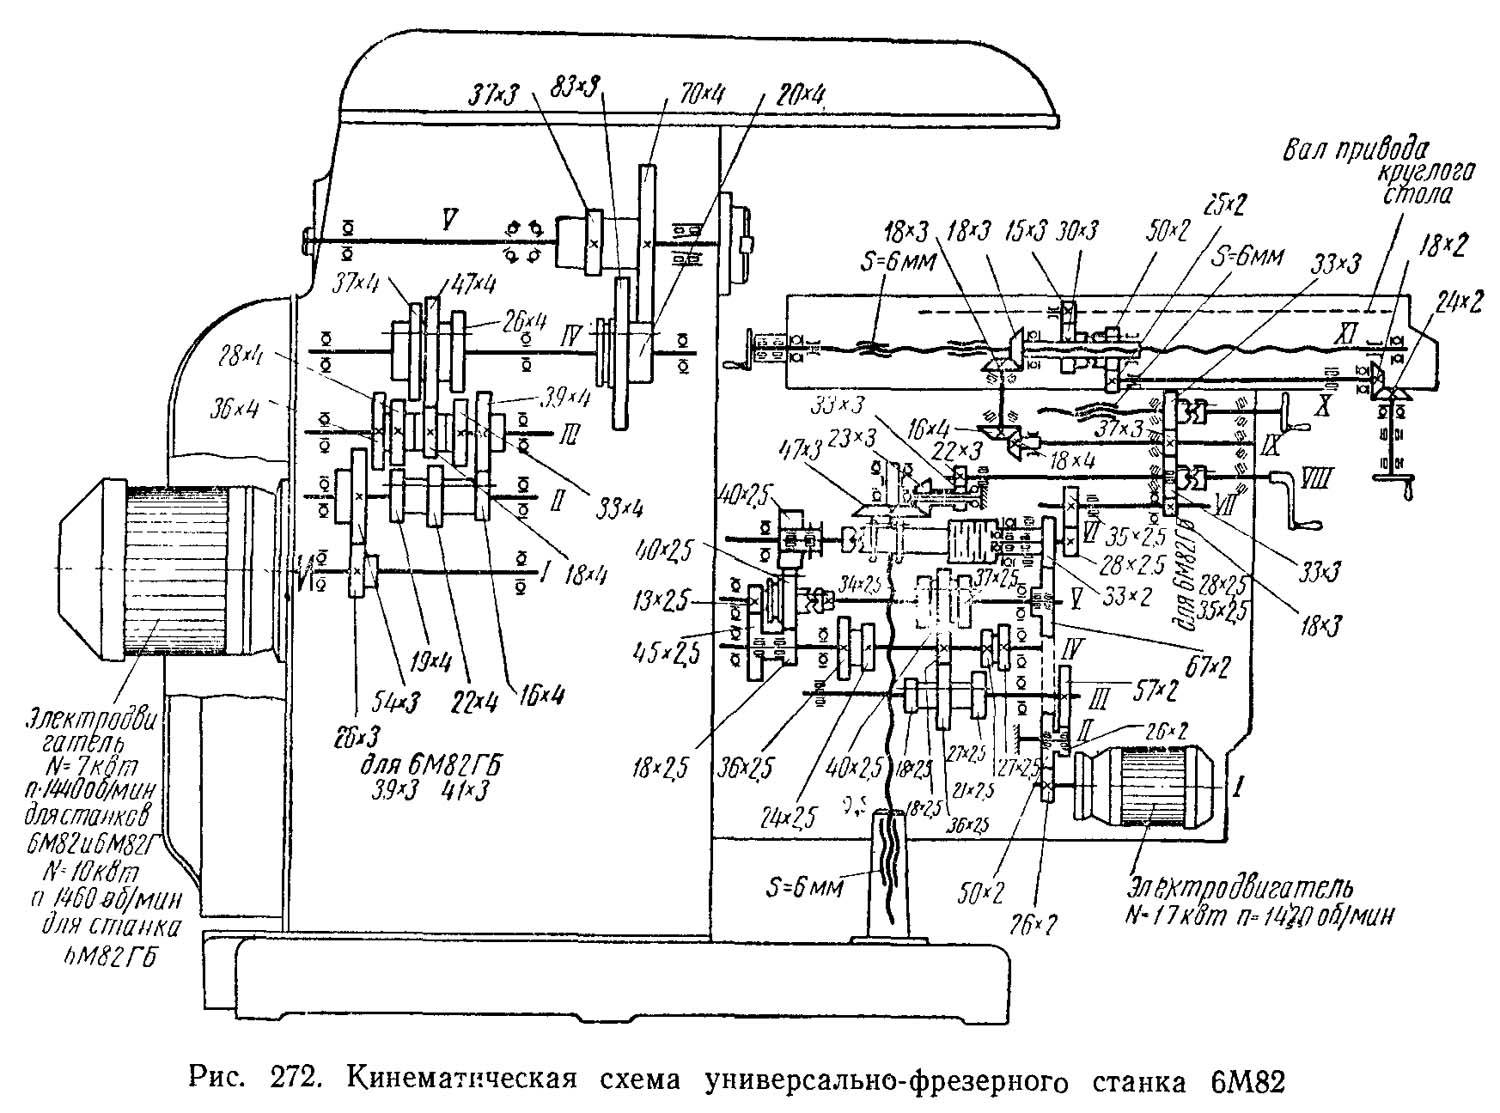 Горизонтально-фрезерный станок 6р82: технические характеристики